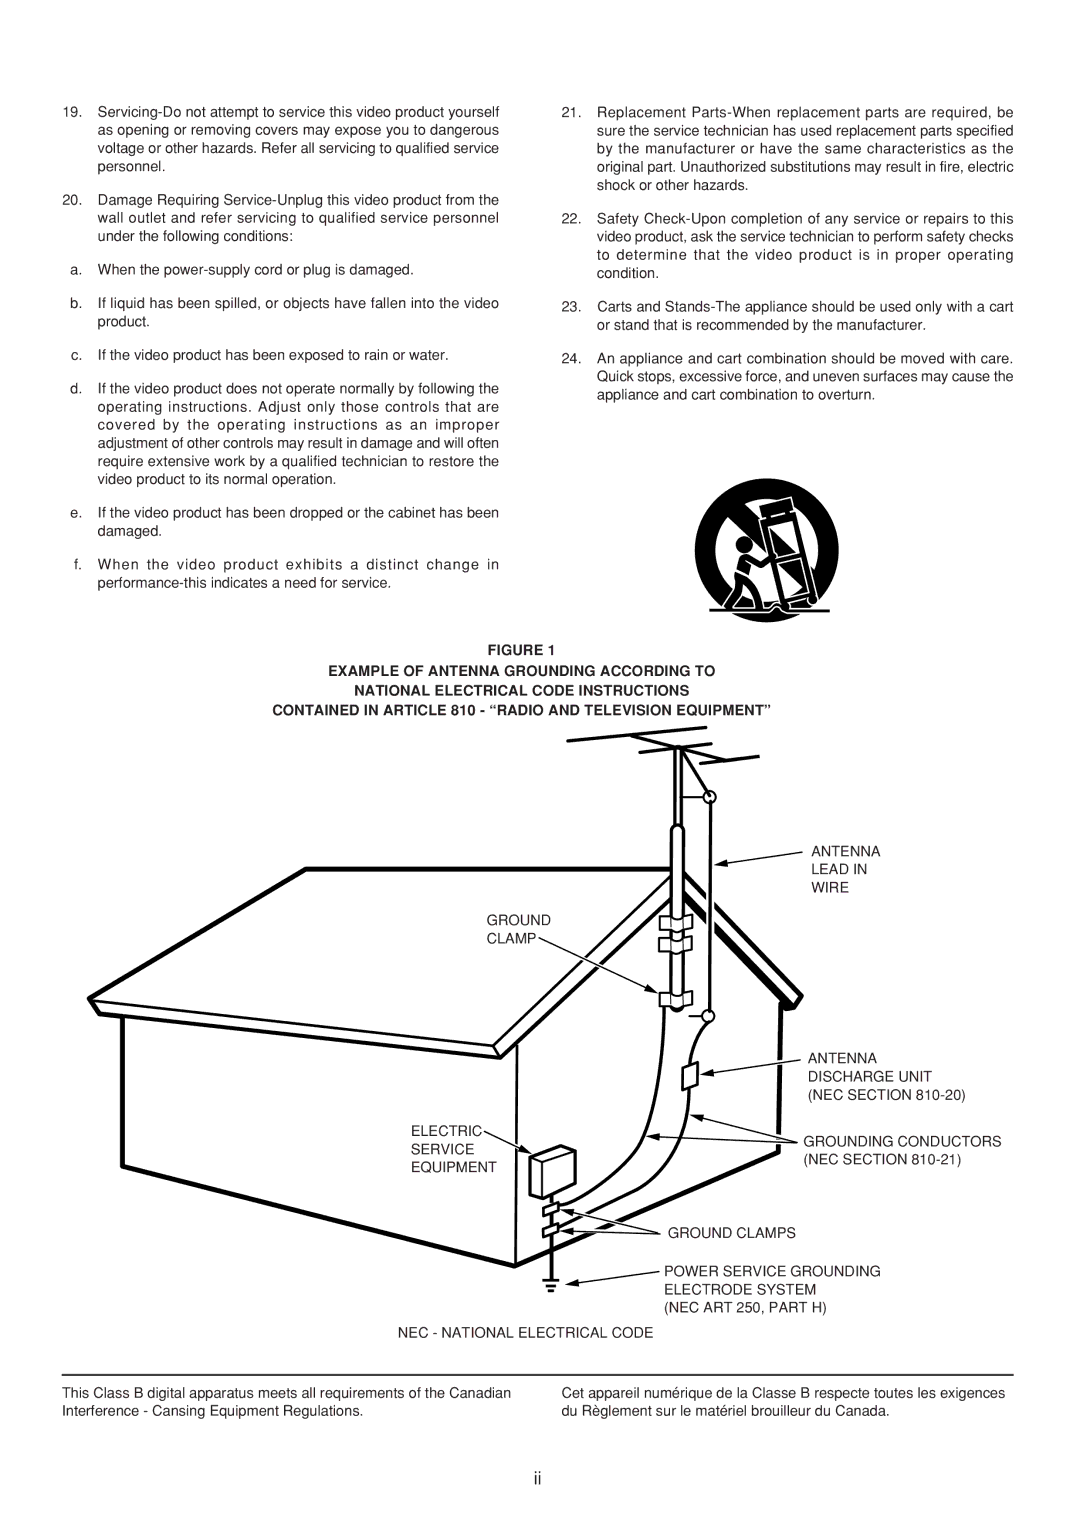 Marantz SR7200 manual NEC Section 